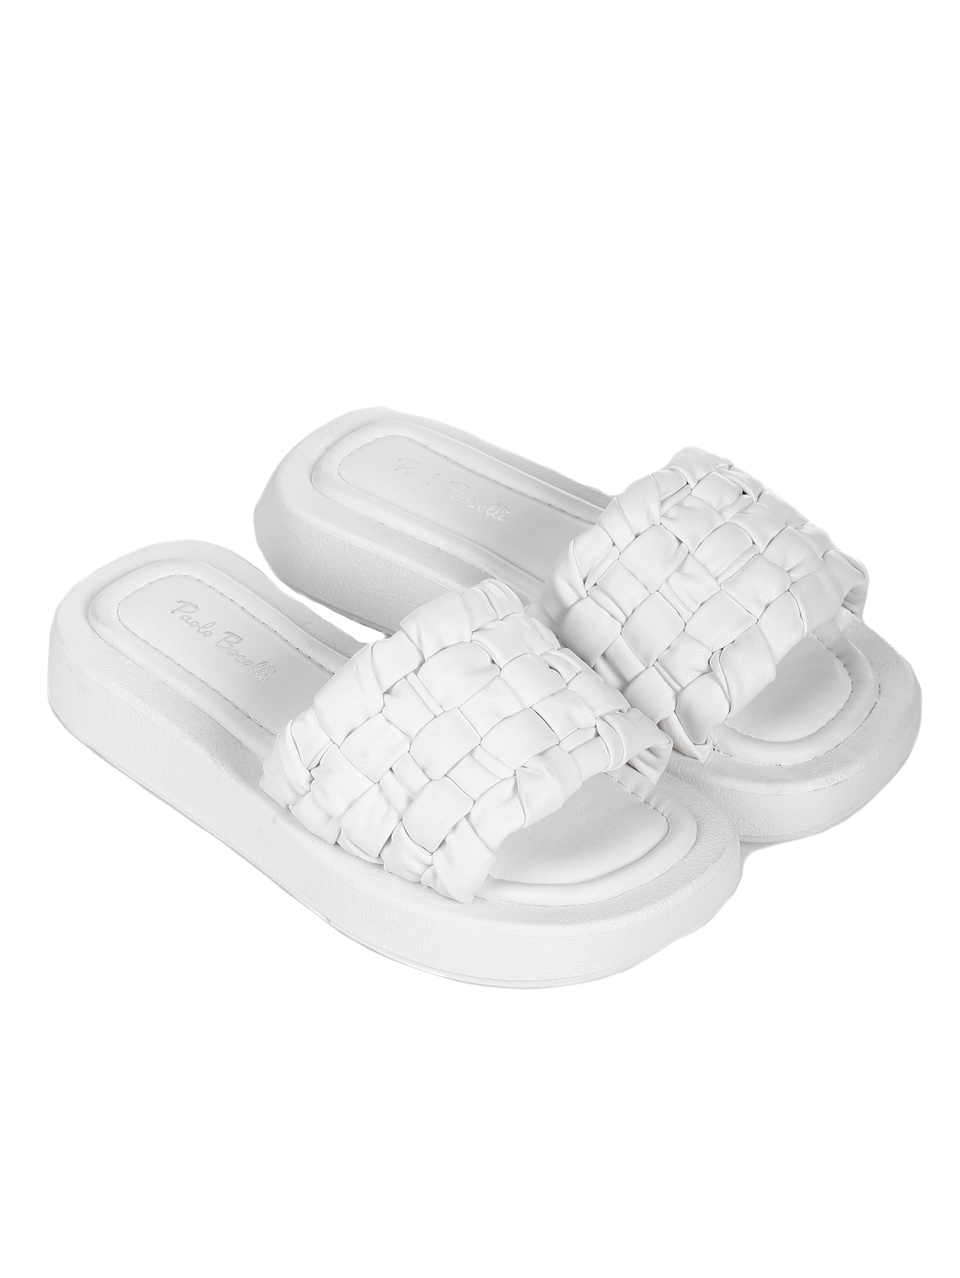 Ежедневни дамски комфортни чехли в бяло 5C-22162 white